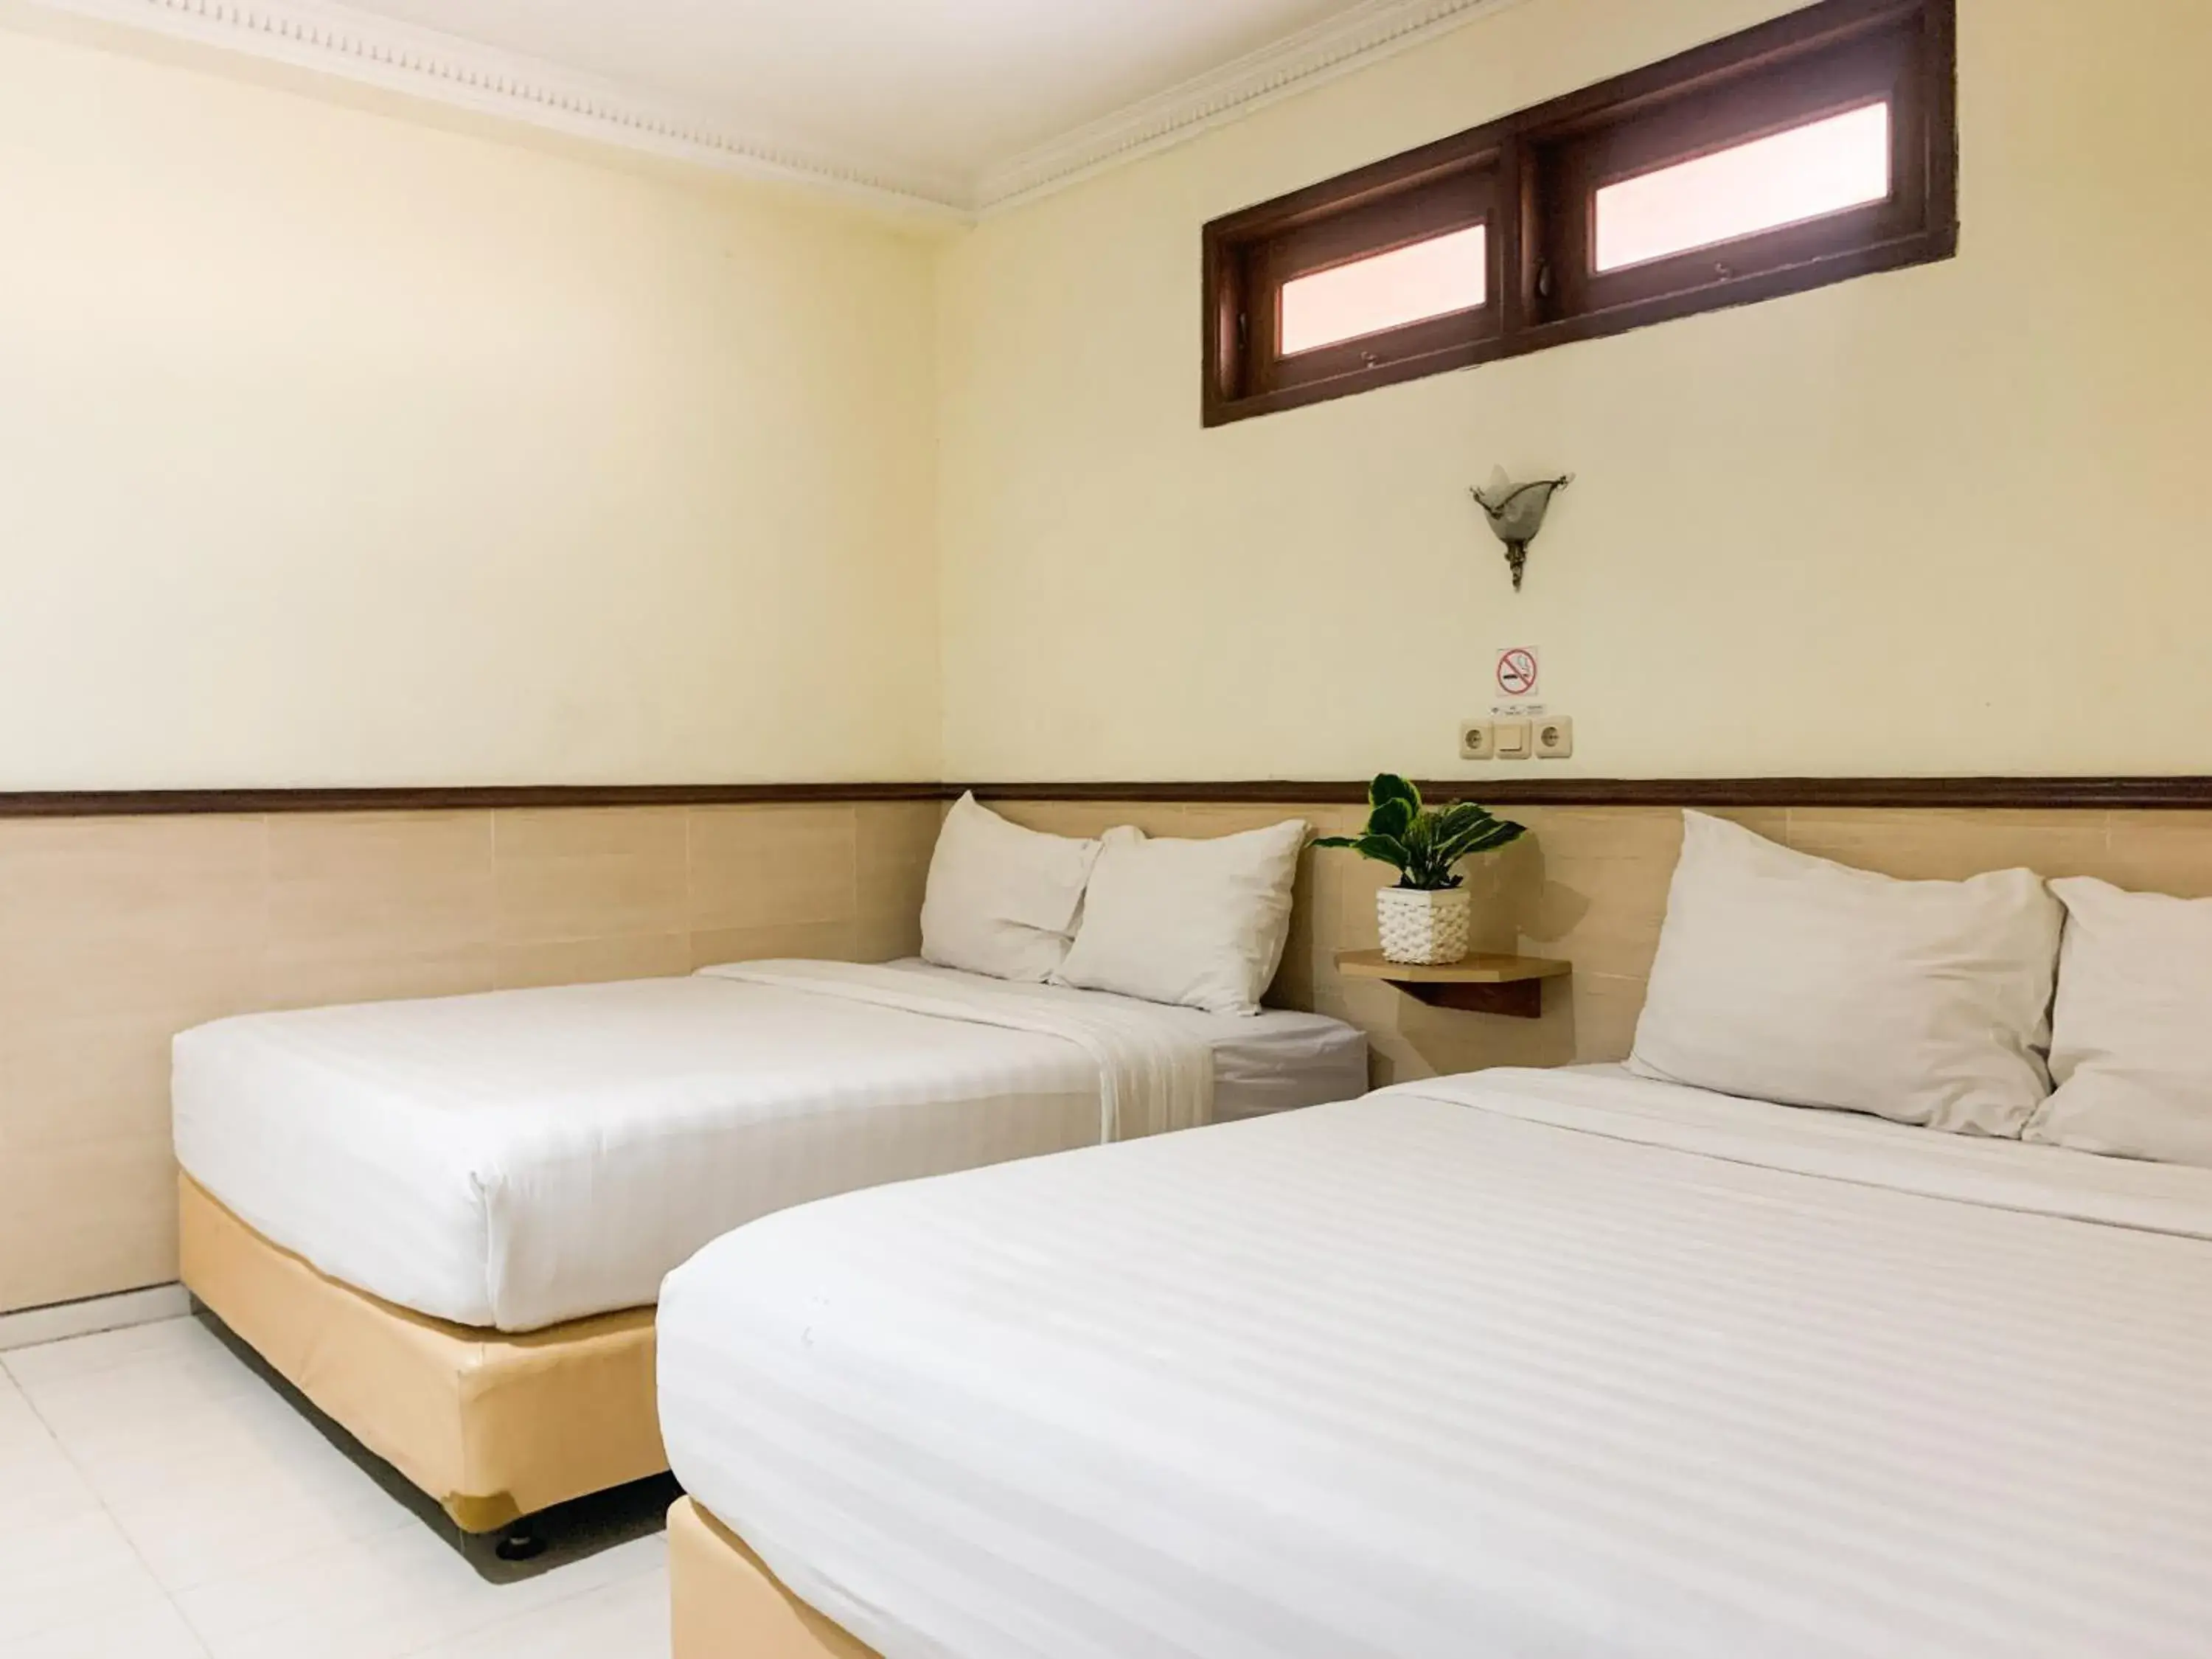 Bedroom, Bed in Musafira Hotel Syariah Malioboro Yogyakarta RedPartner